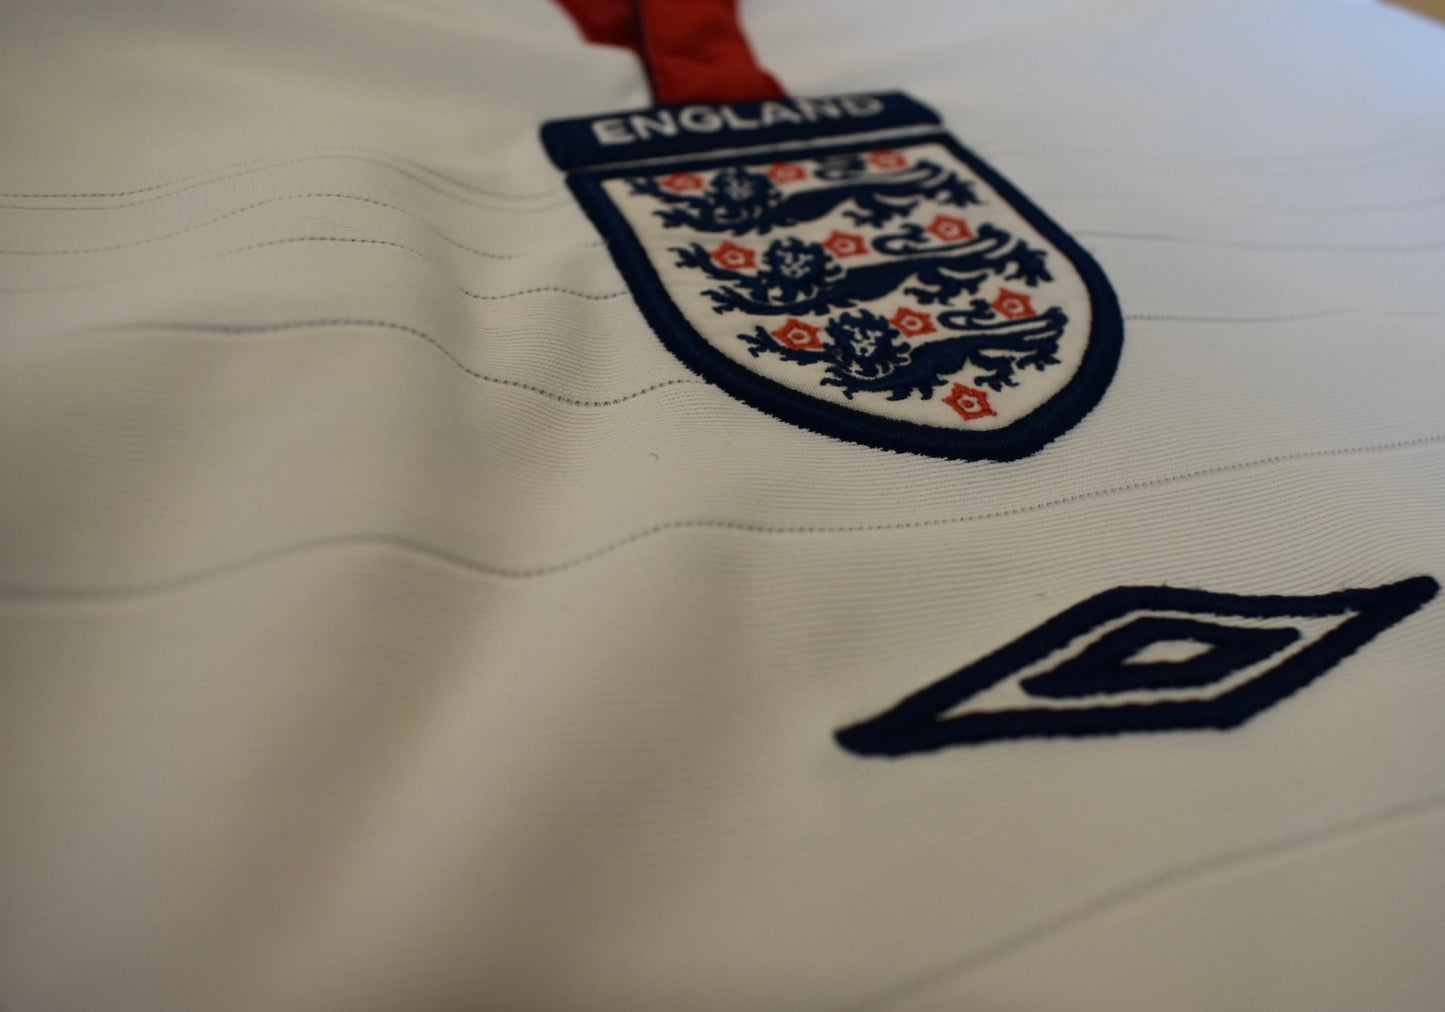 England 2003-2005 home shirt